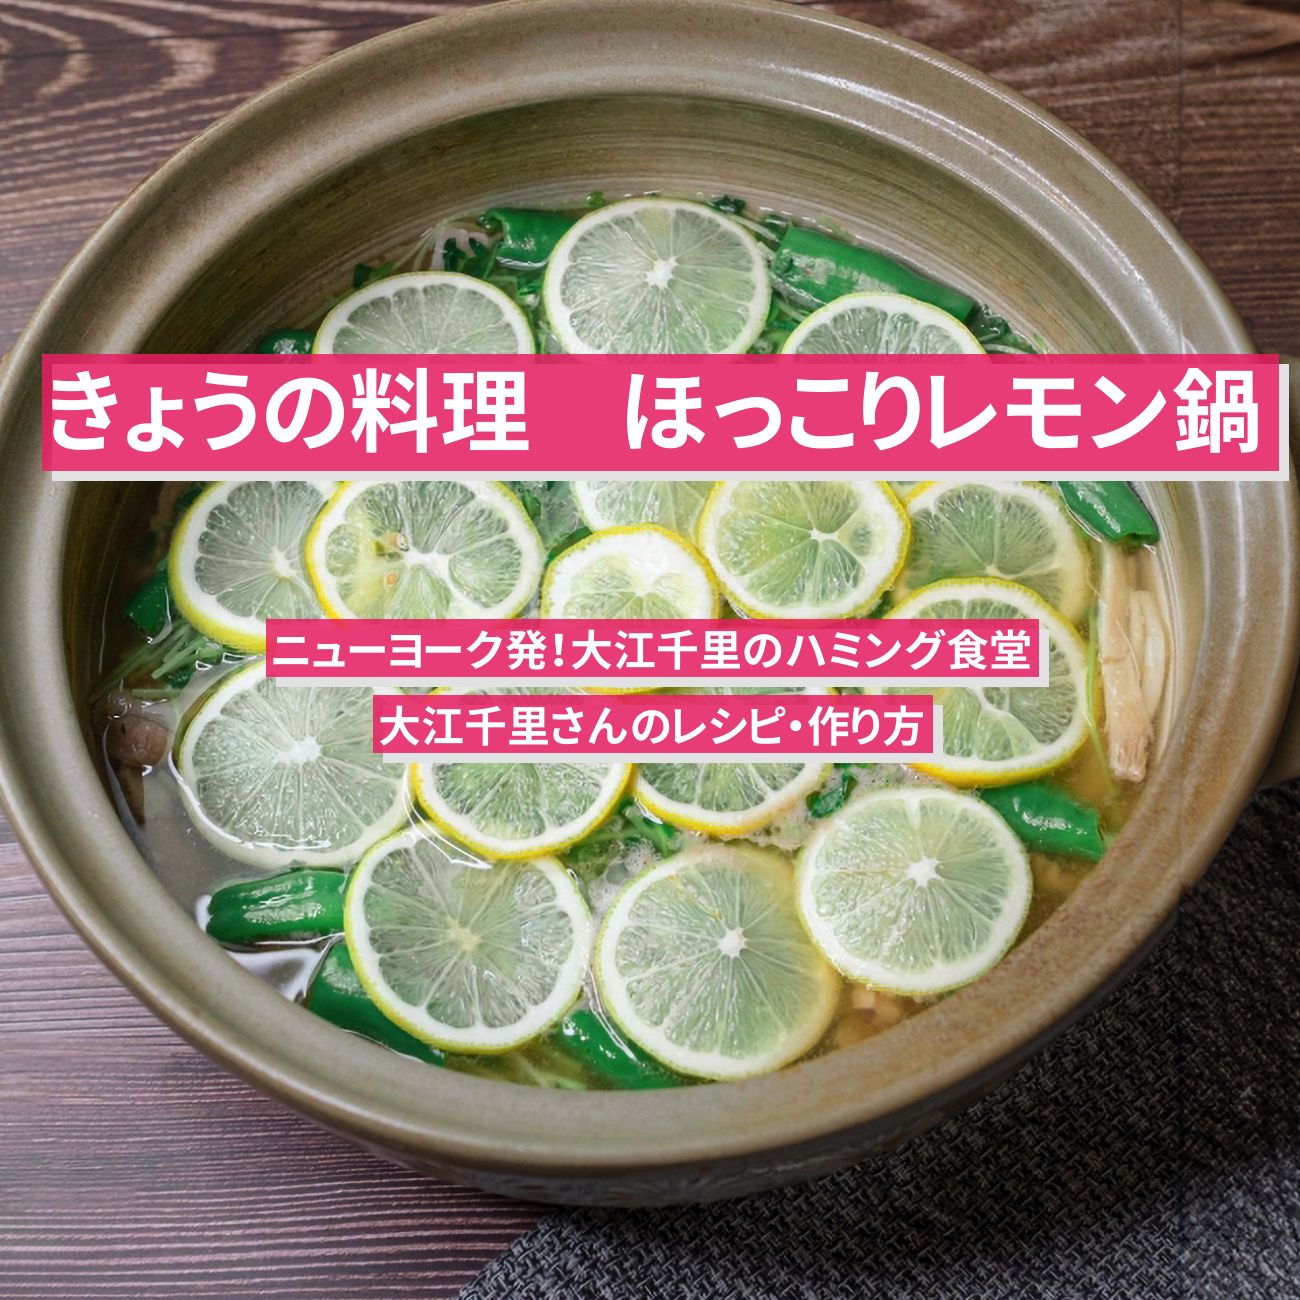 【きょうの料理】『ほっこりレモン鍋』大江千里さんのレシピ・作り方